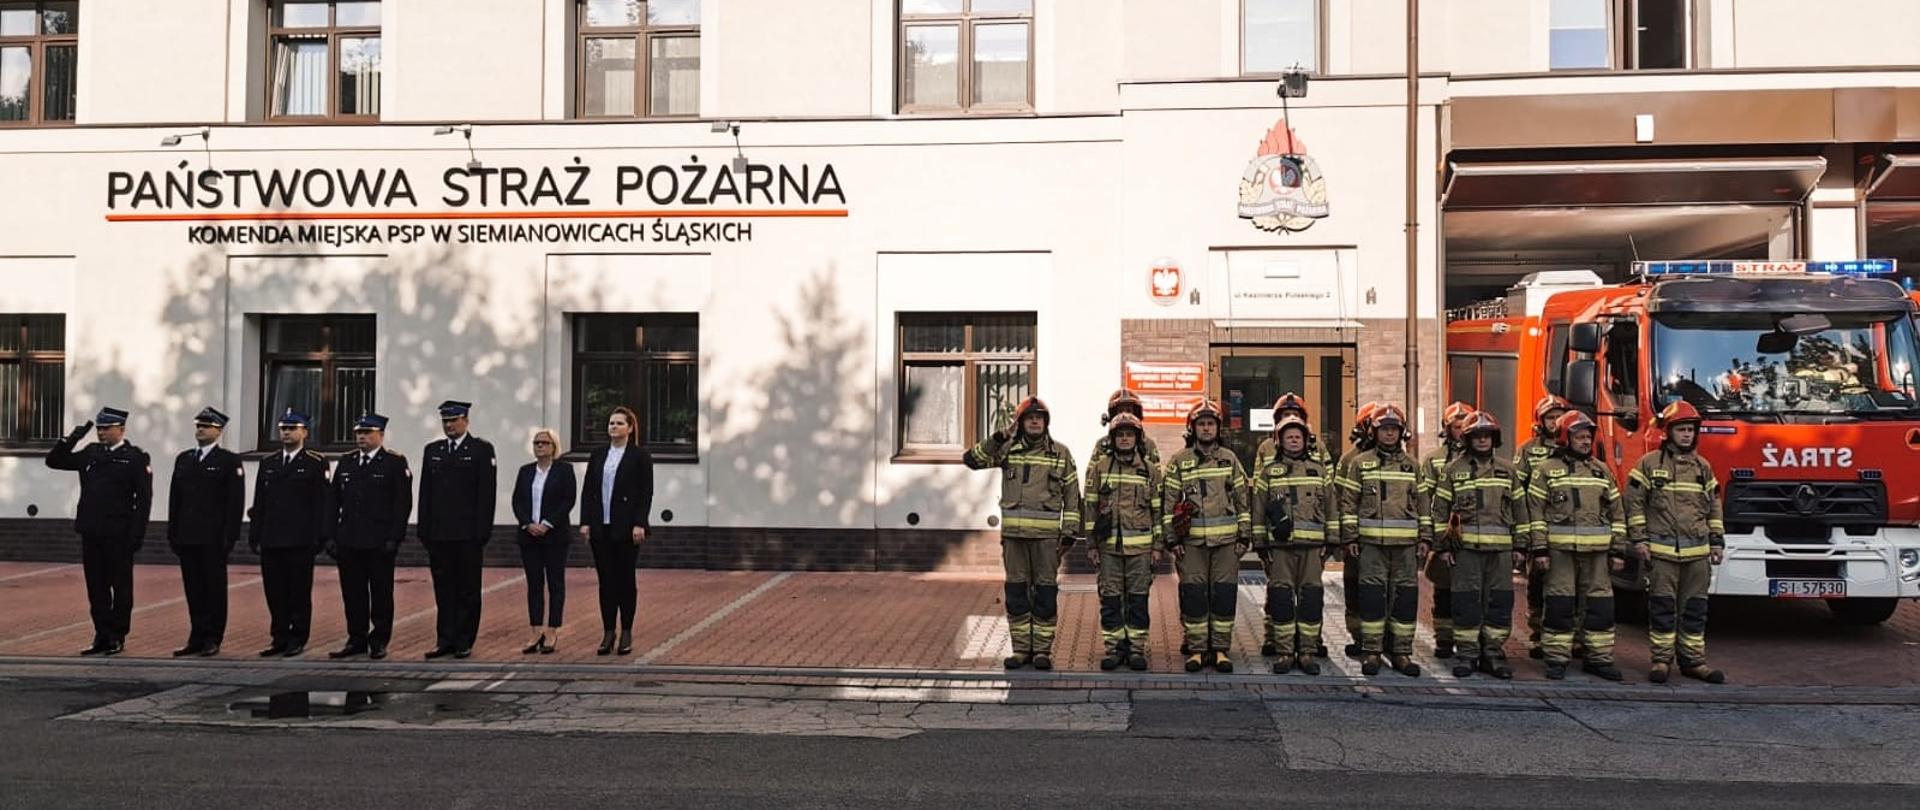 Śląscy strażacy oddali hołd tragicznie zmarłemu strażakowi
